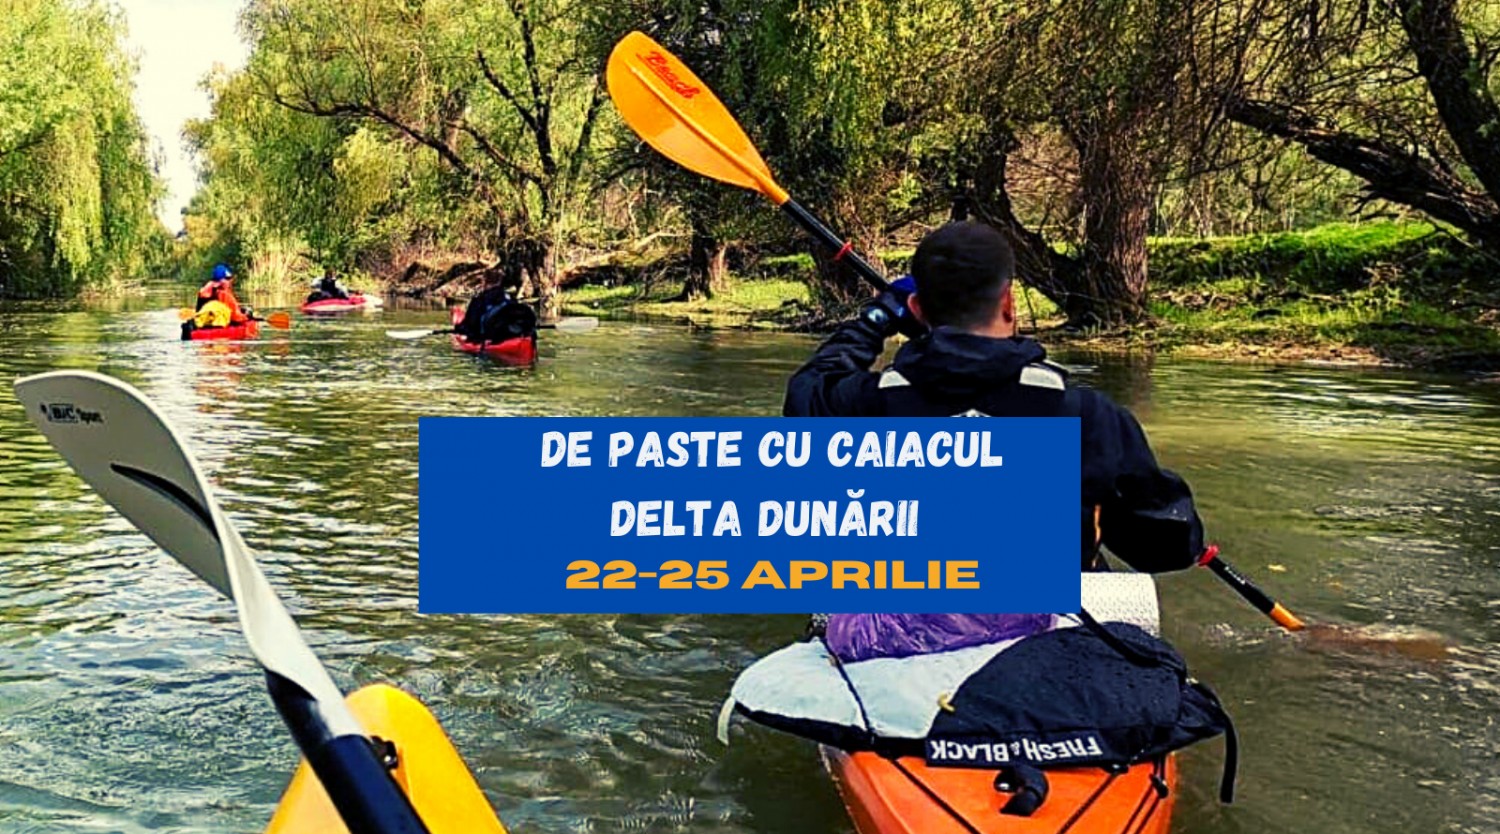 De PASTE cu caiacul 4 zile Delta Dunării - Marea Neagră 22-25 aprilie 2022